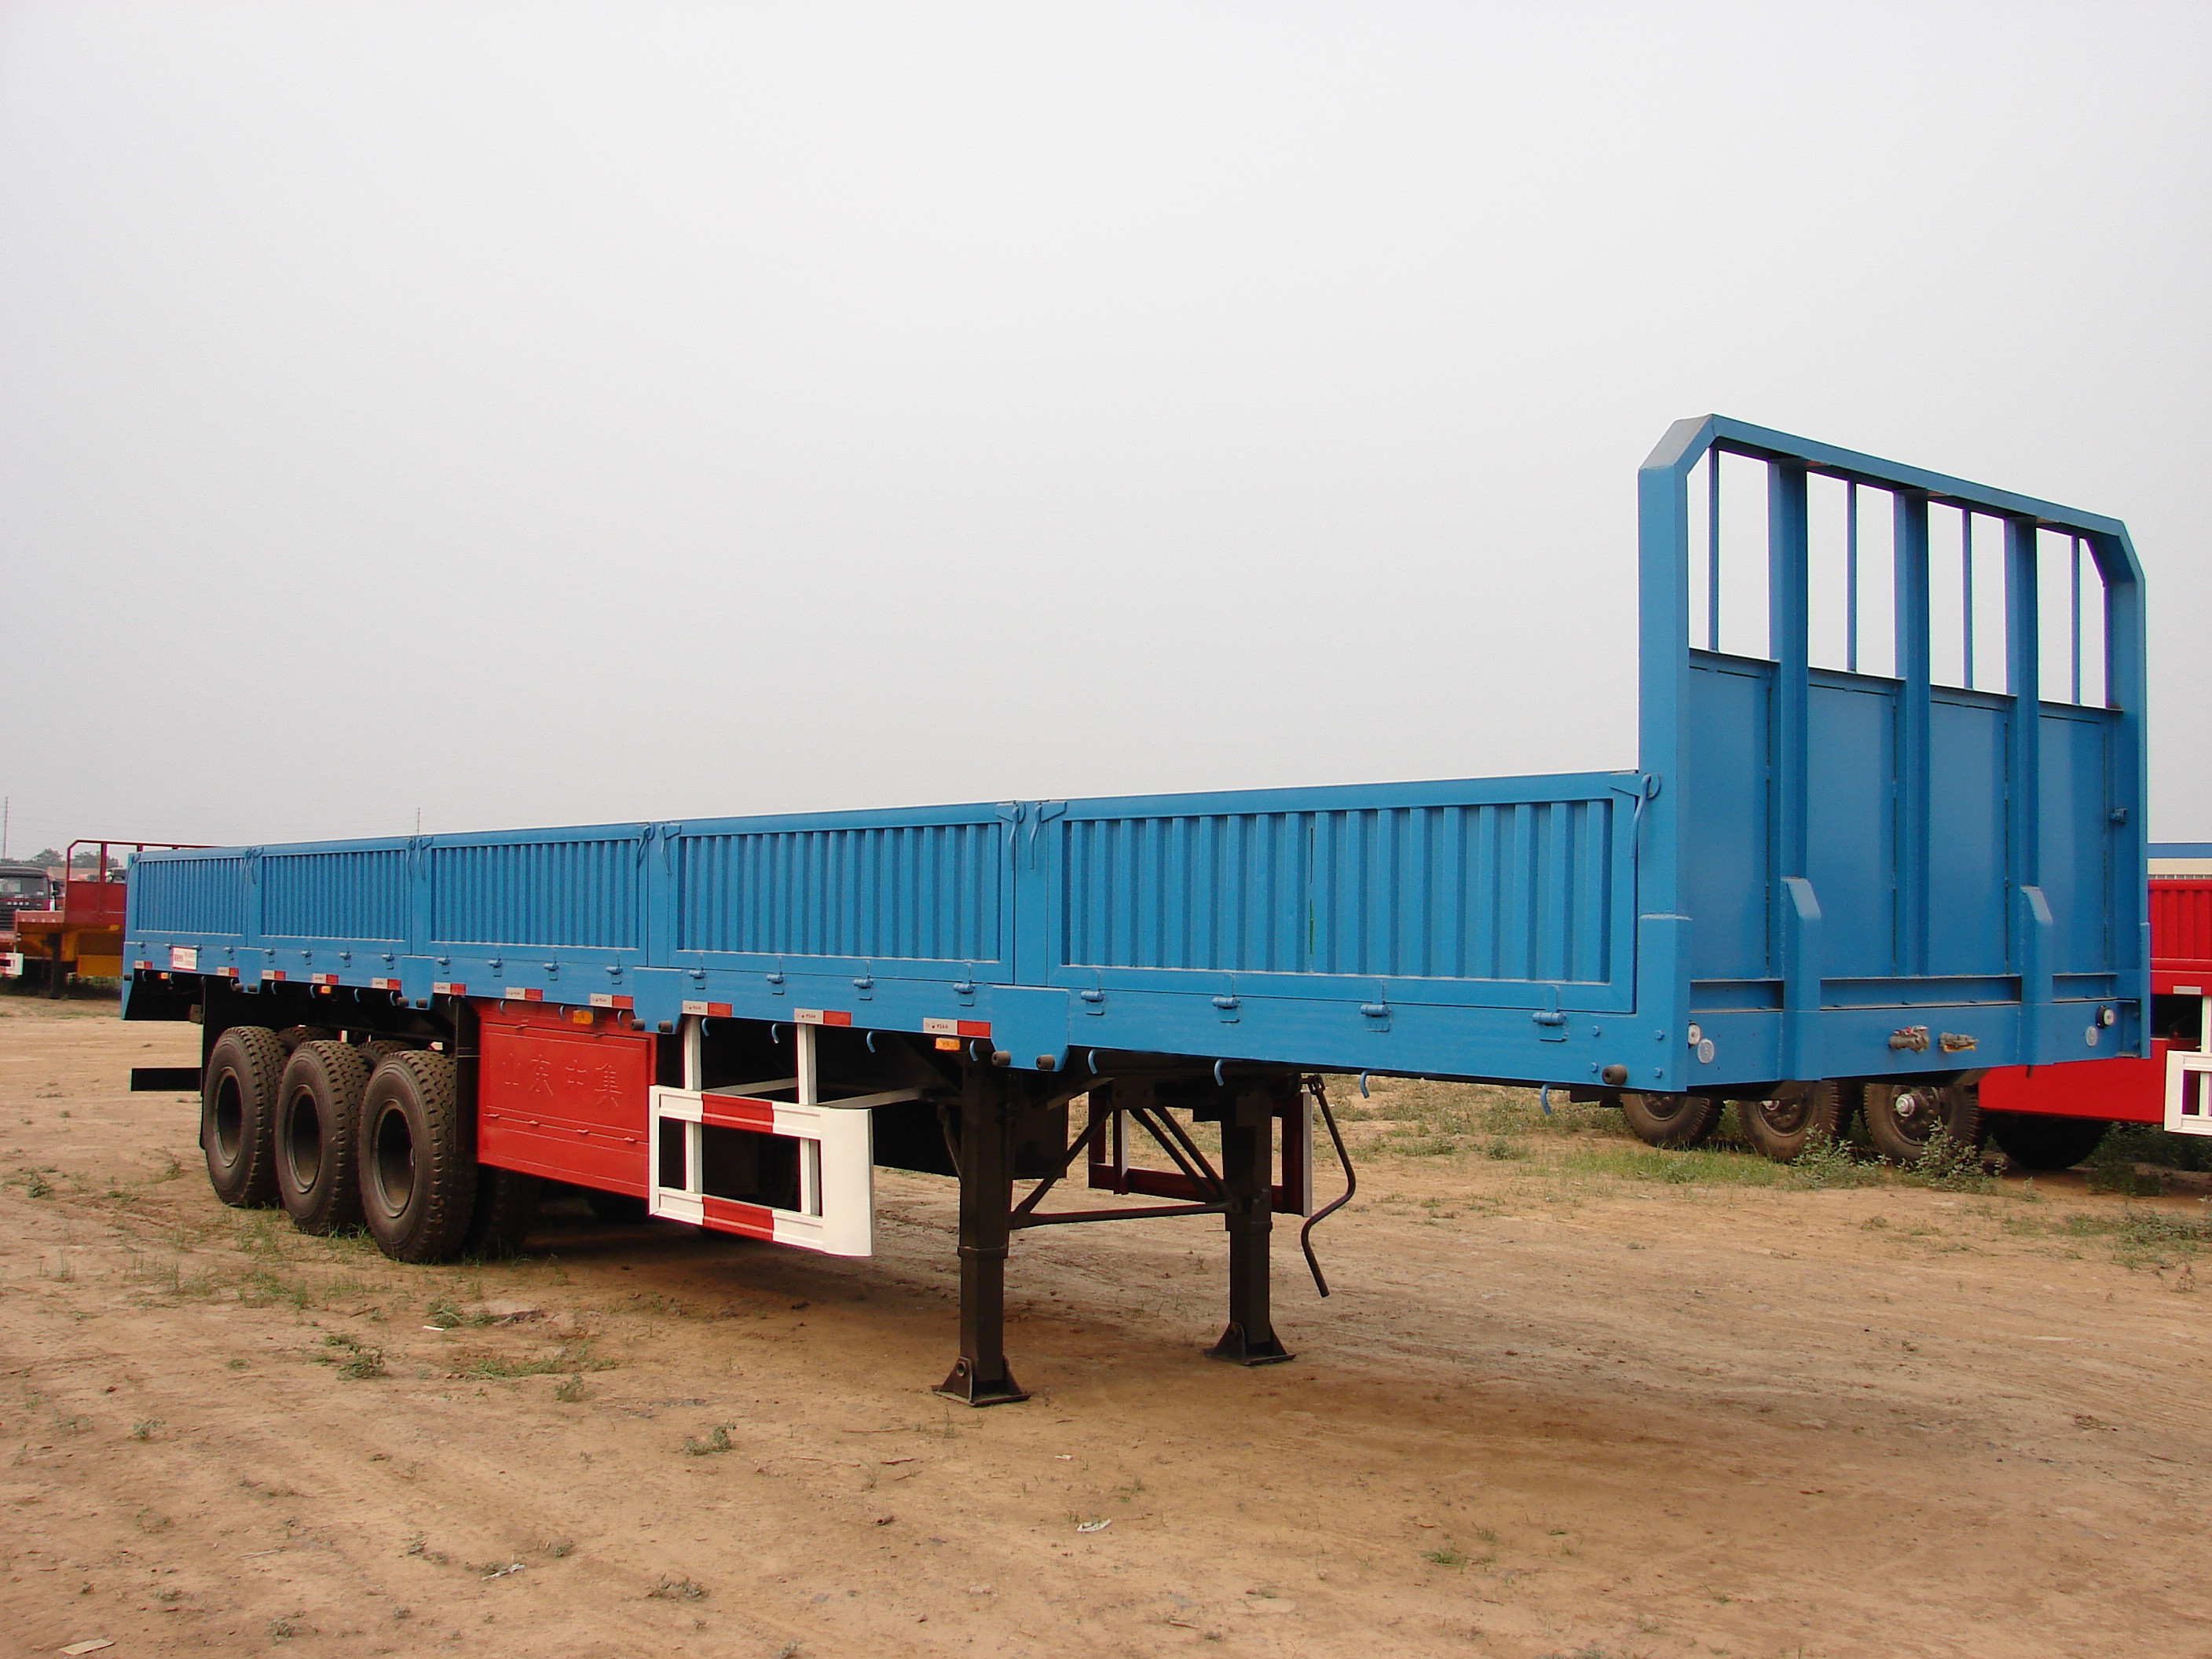 Camión resistente 2/3 árboles del cargo de los remolques de SINOTRUK los 40ft semi con 40-60 toneladas de Cabuge